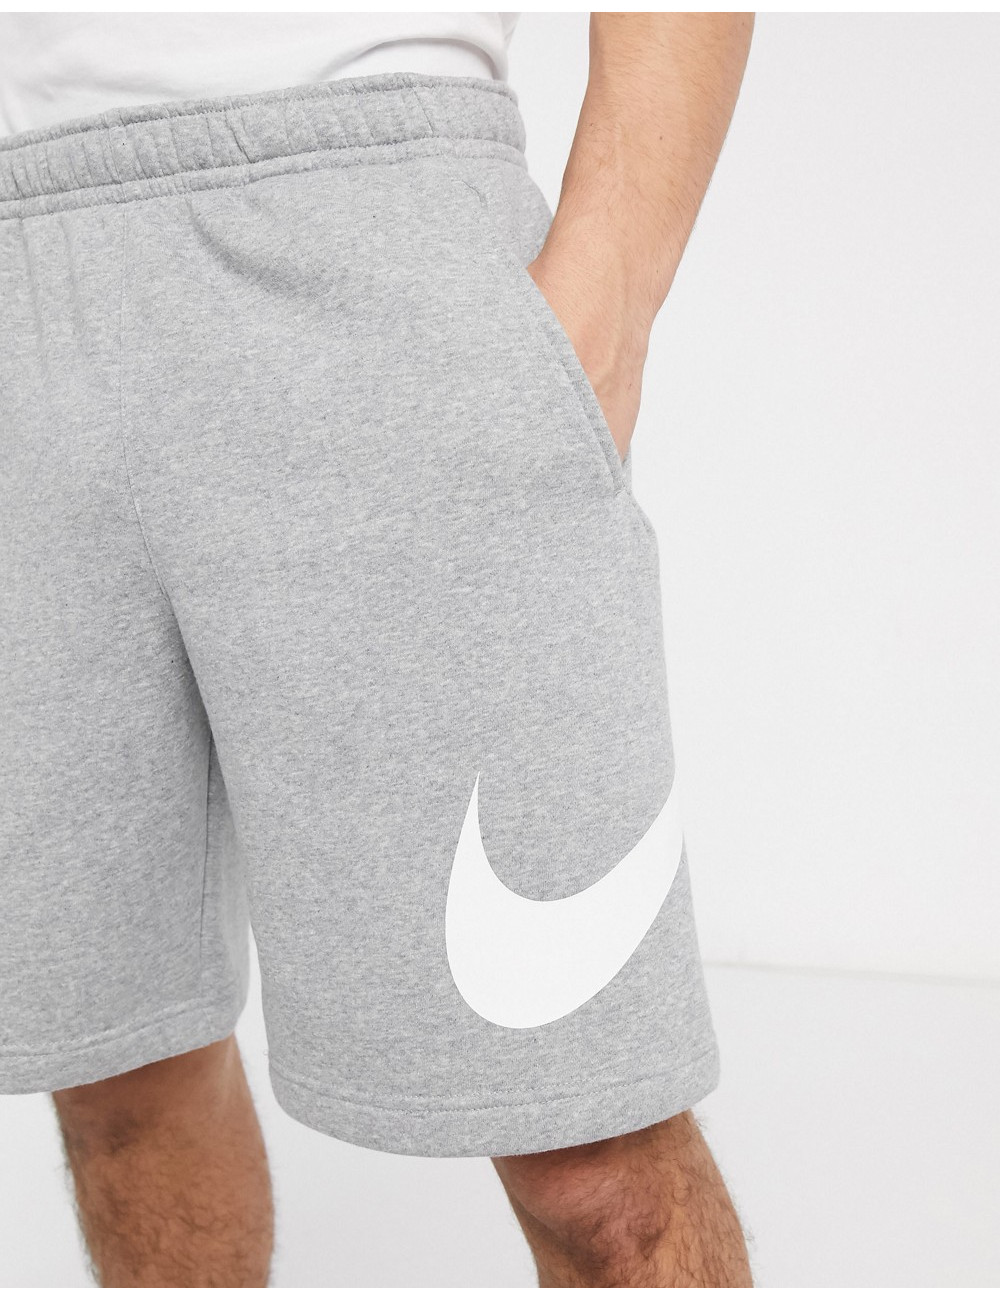 Nike Club shorts in grey